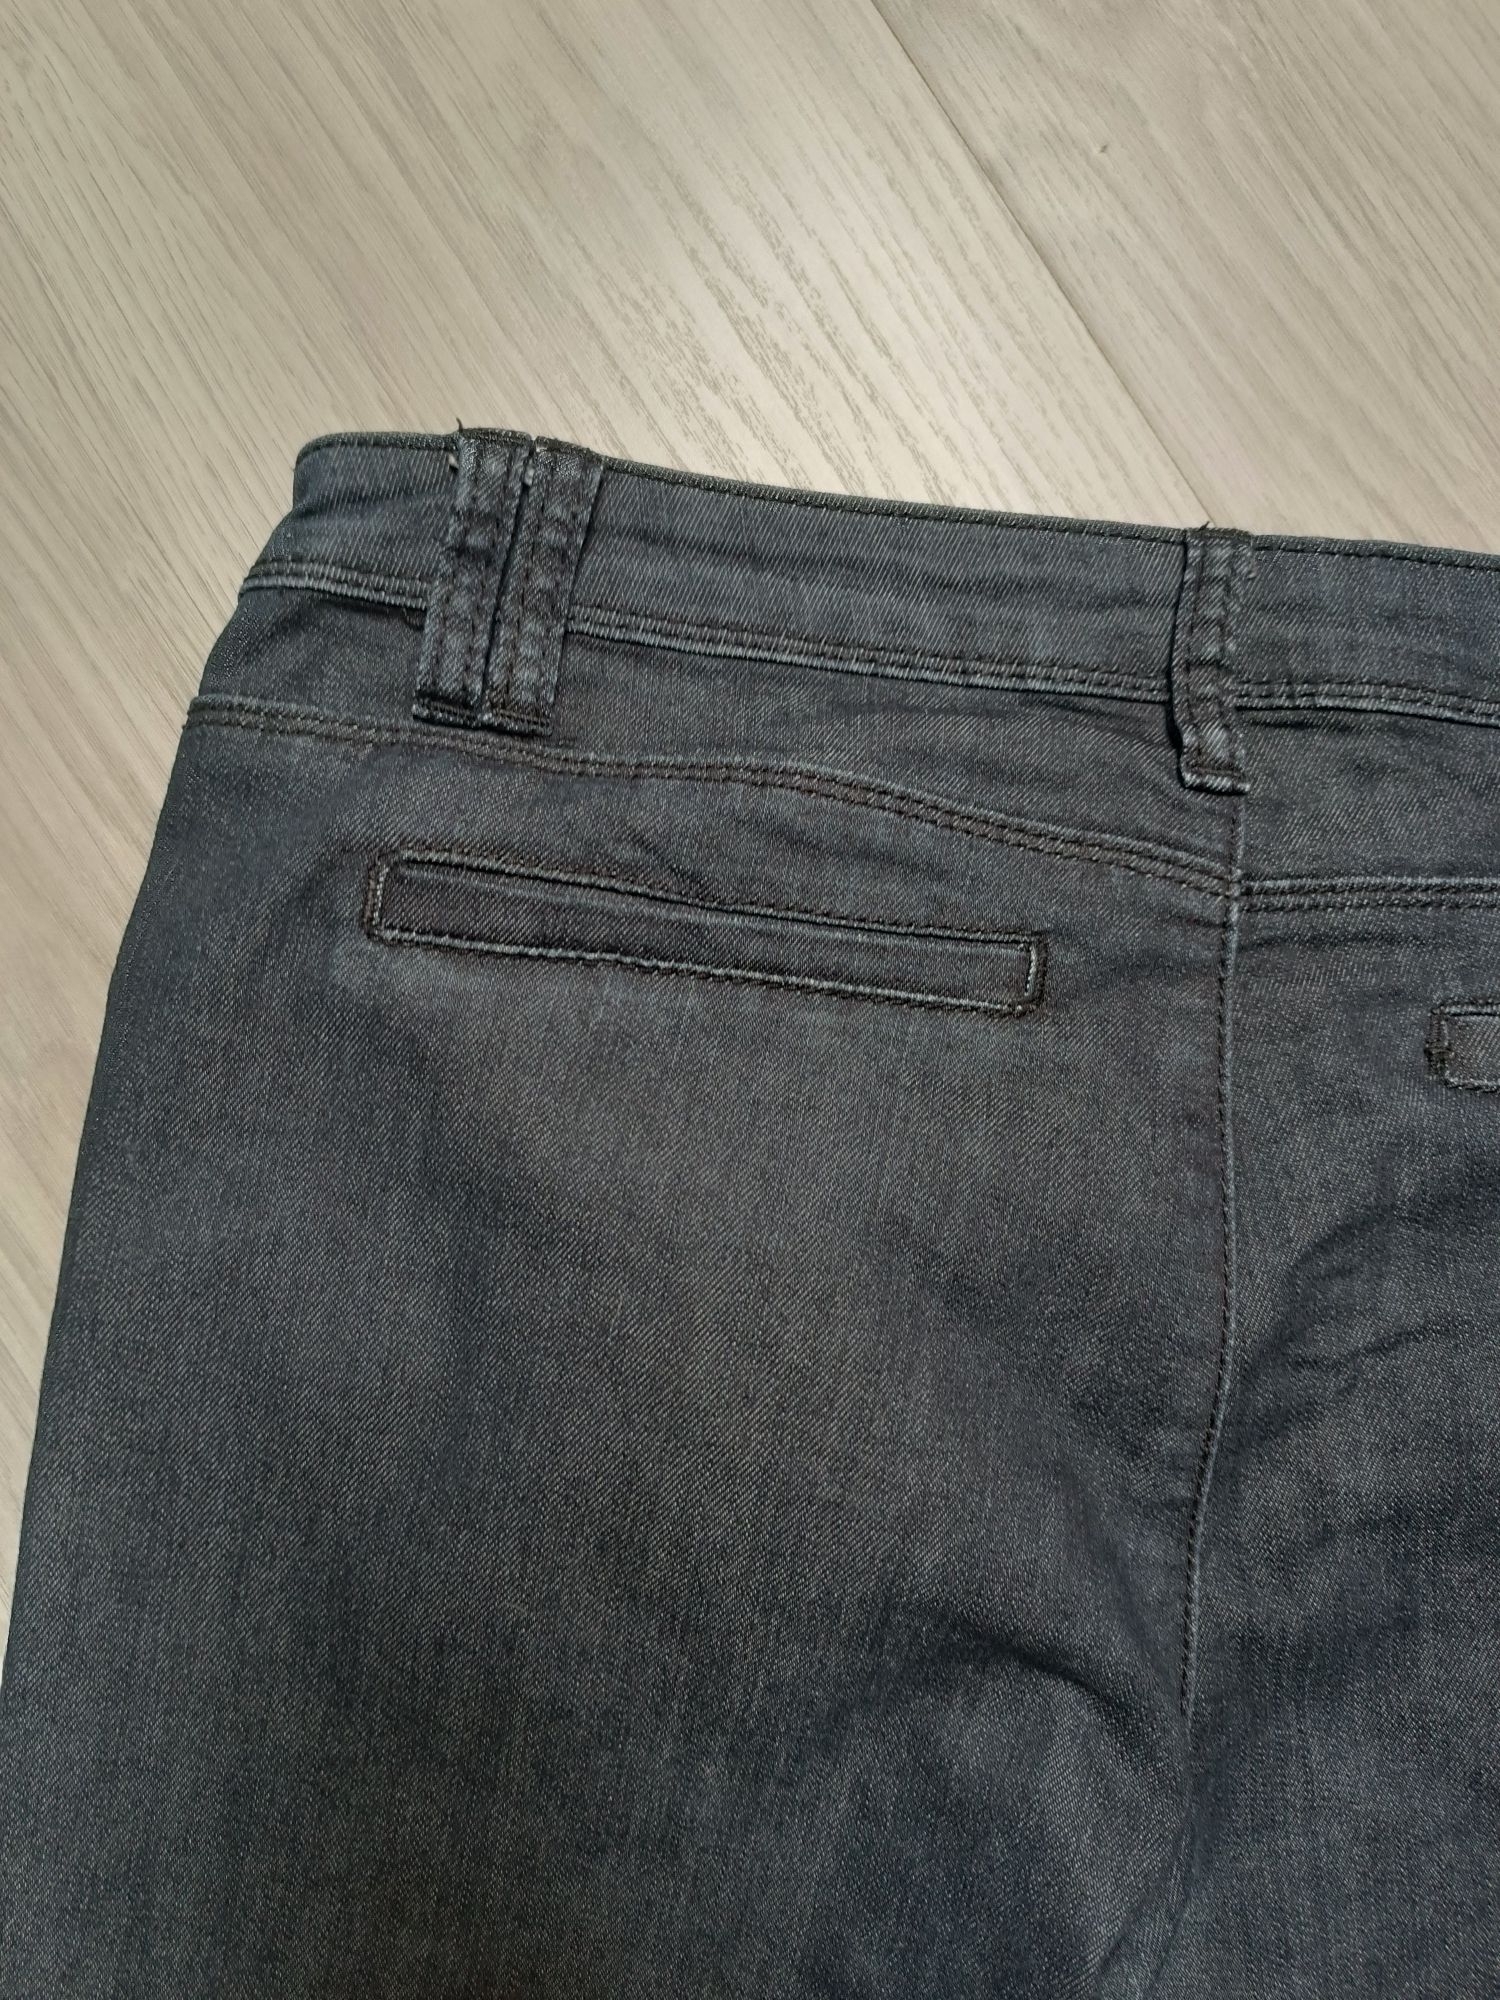 Greenpoint dżinsy damskie spodnie jeansowe rurki klasyczne basic L